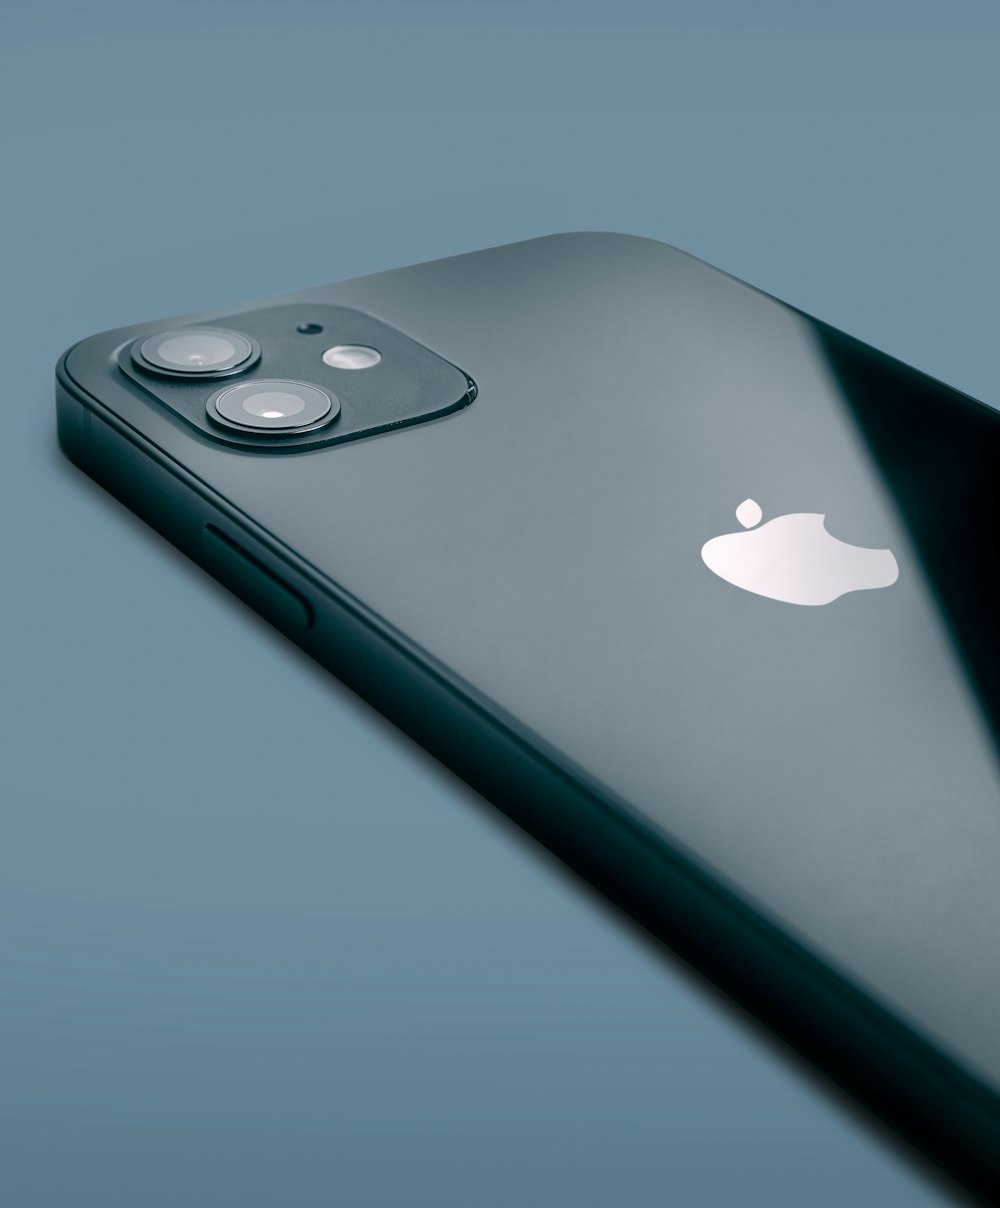 iPhone 6 plateado sobre superficie azul